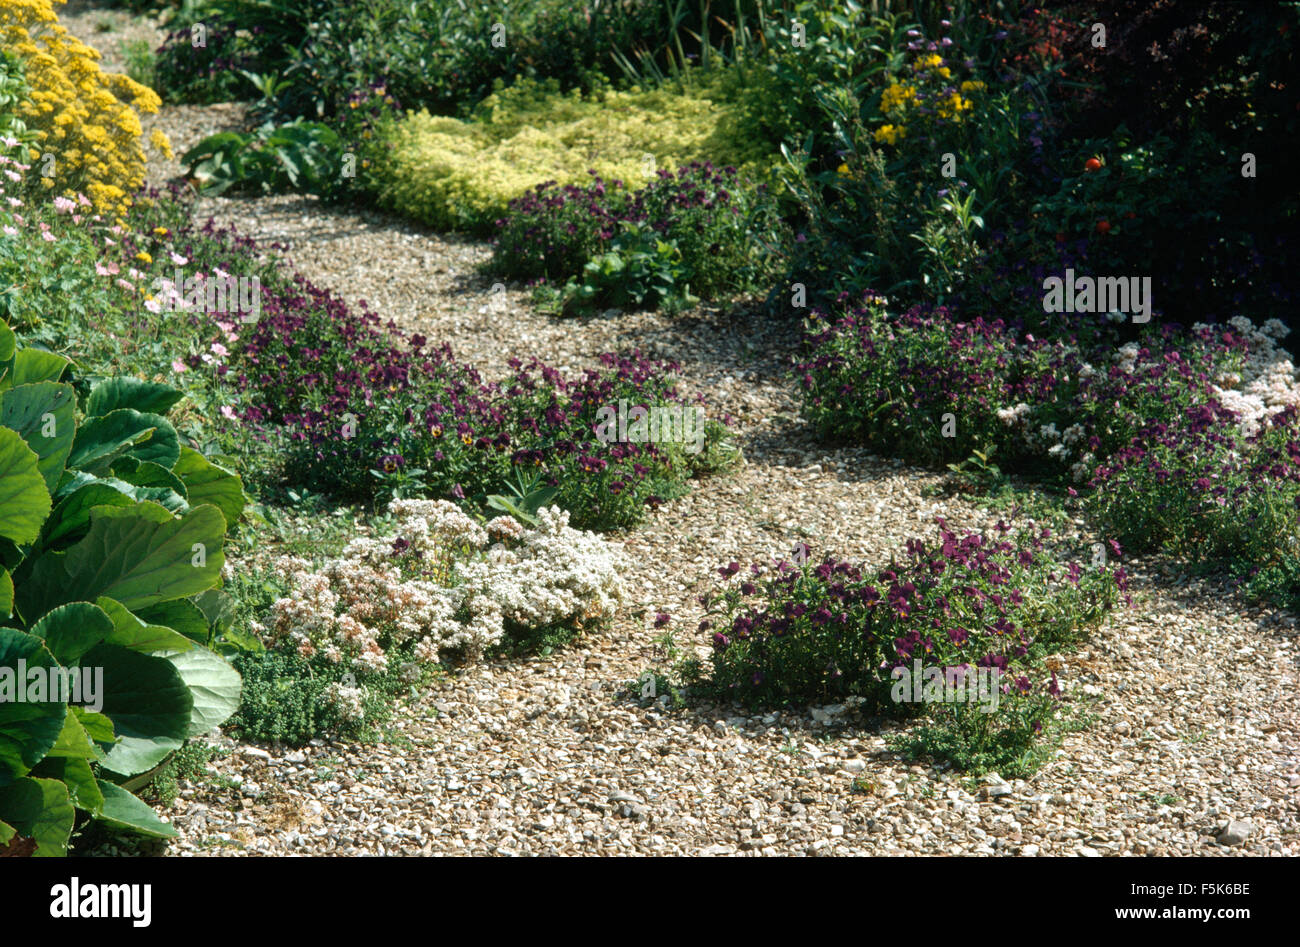 Viola viole crescente nel sentiero di ghiaia tra le frontiere in un paese giardino in estate Foto Stock